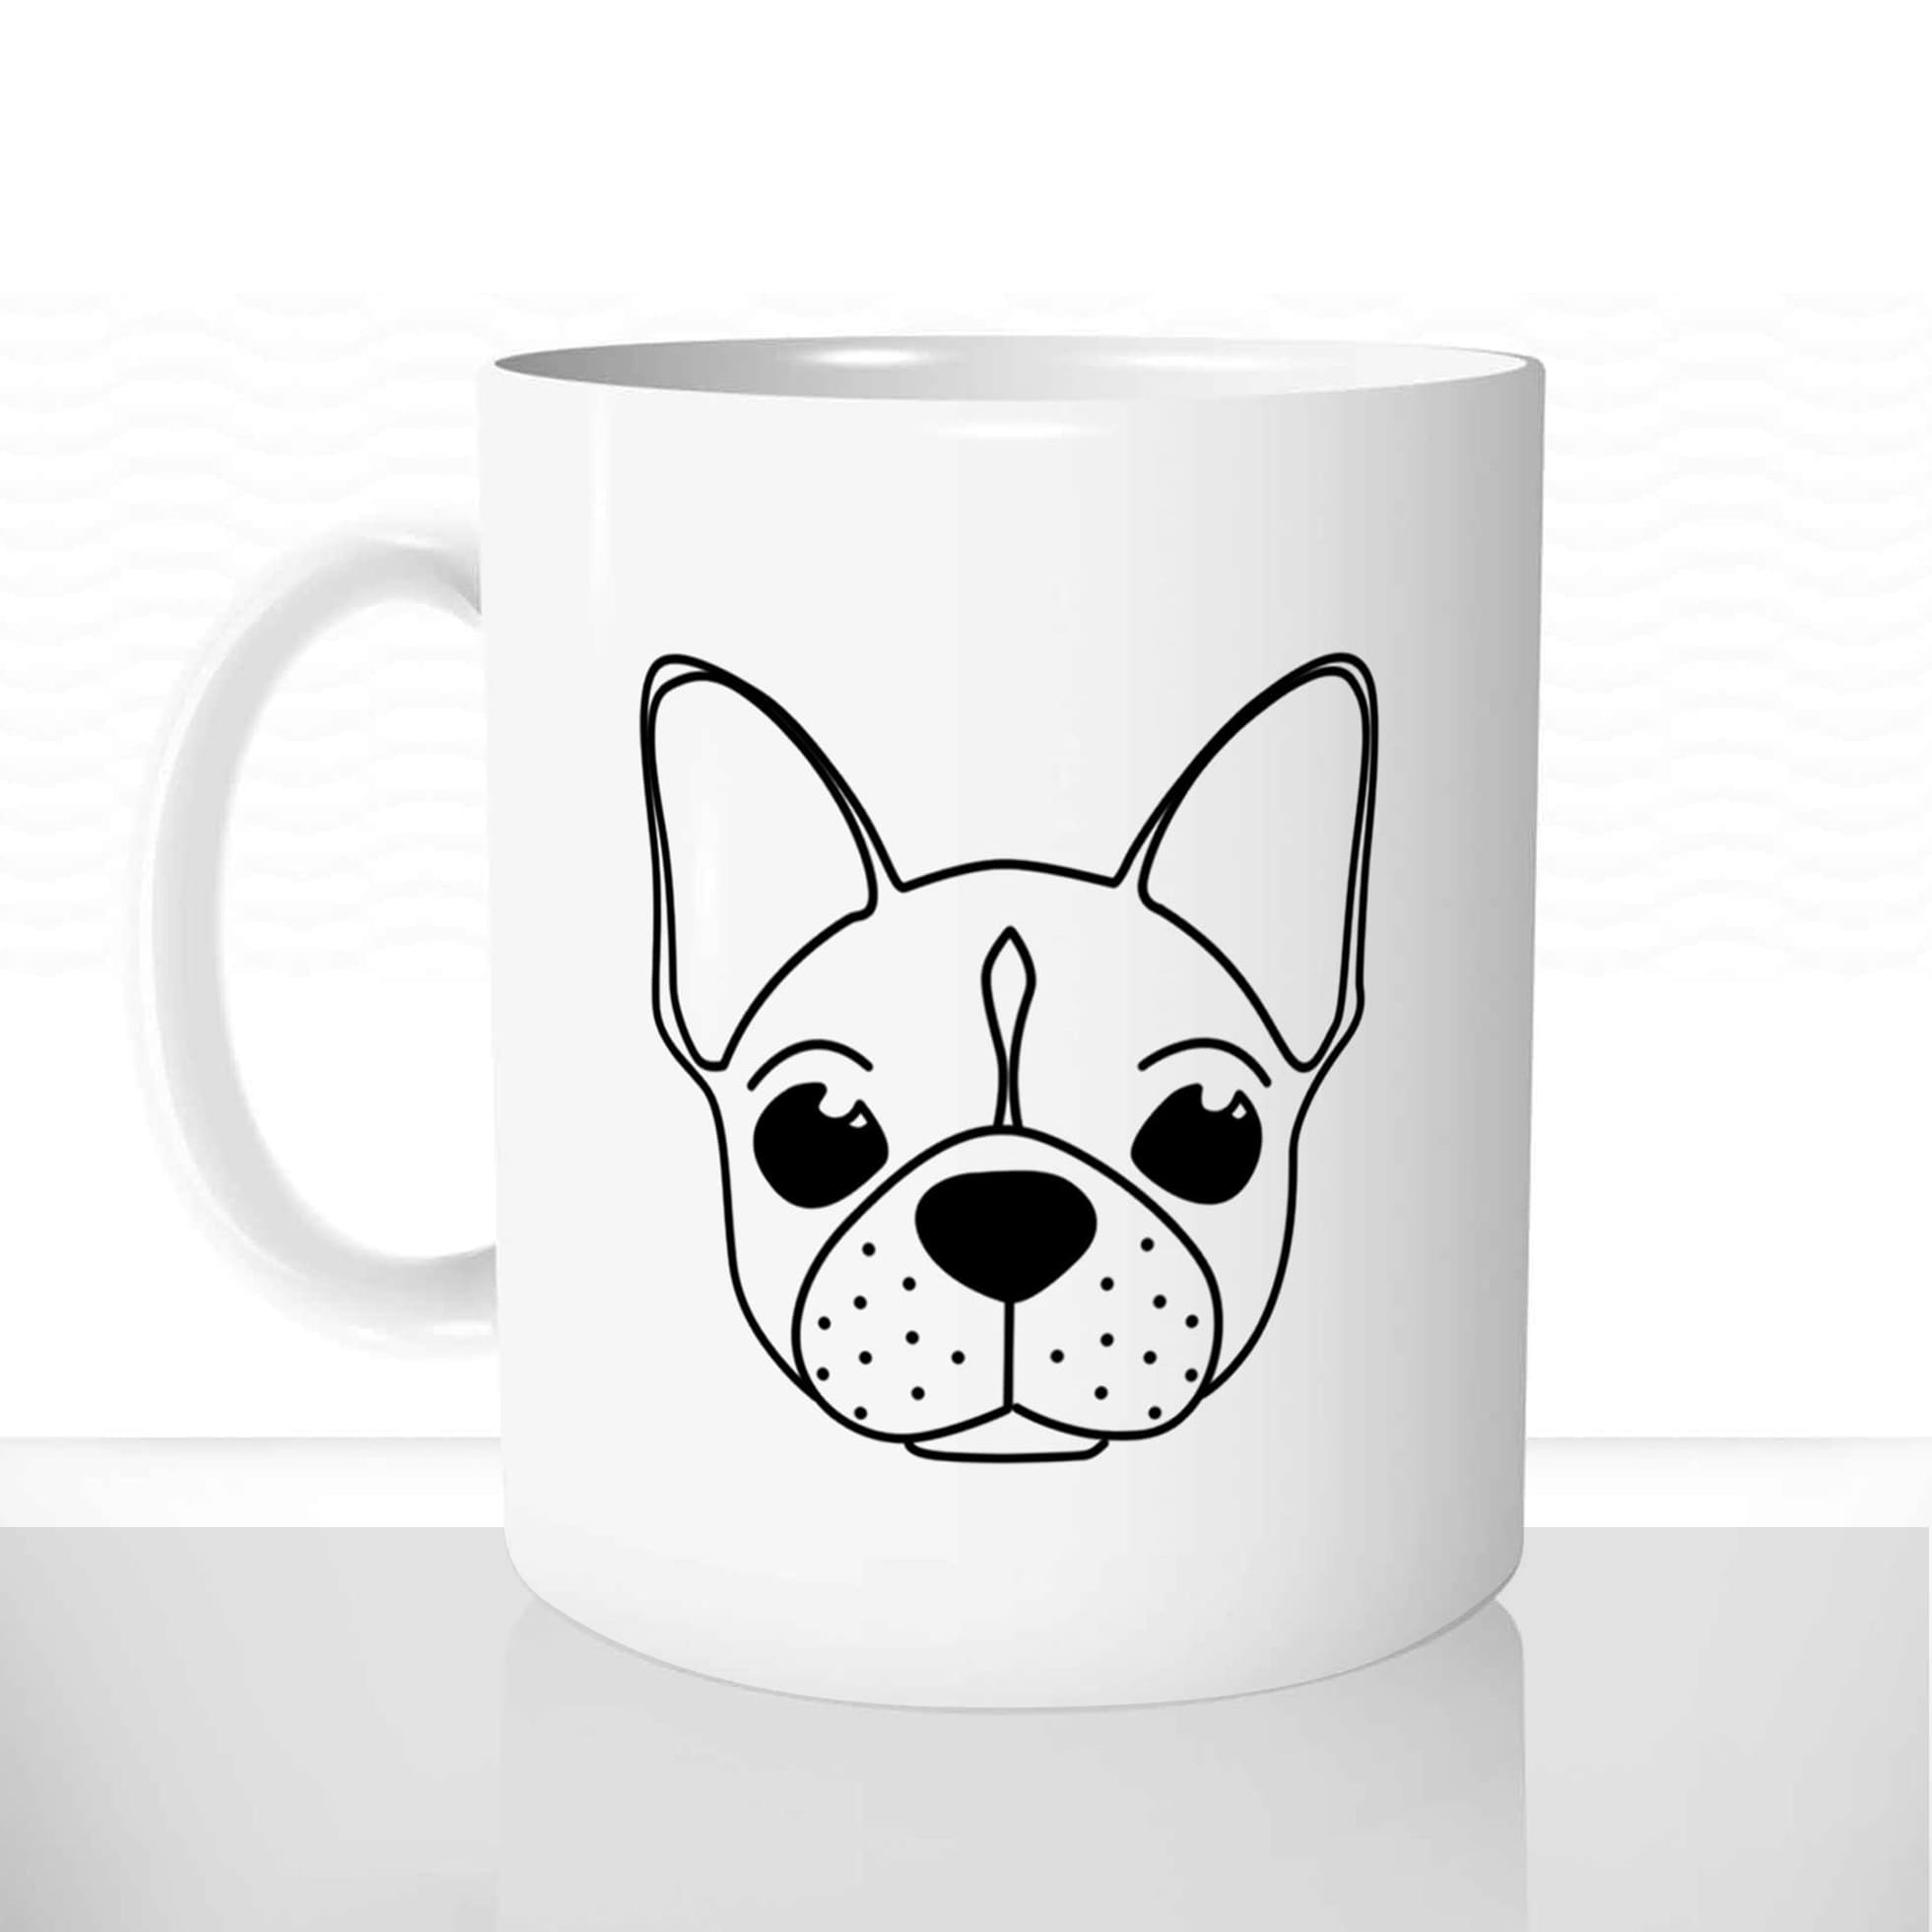 mug classique en céramique 11oz personnalisé personnalisable photo animal chien chiot tete bulldog francais race nain offrir cadeau chou